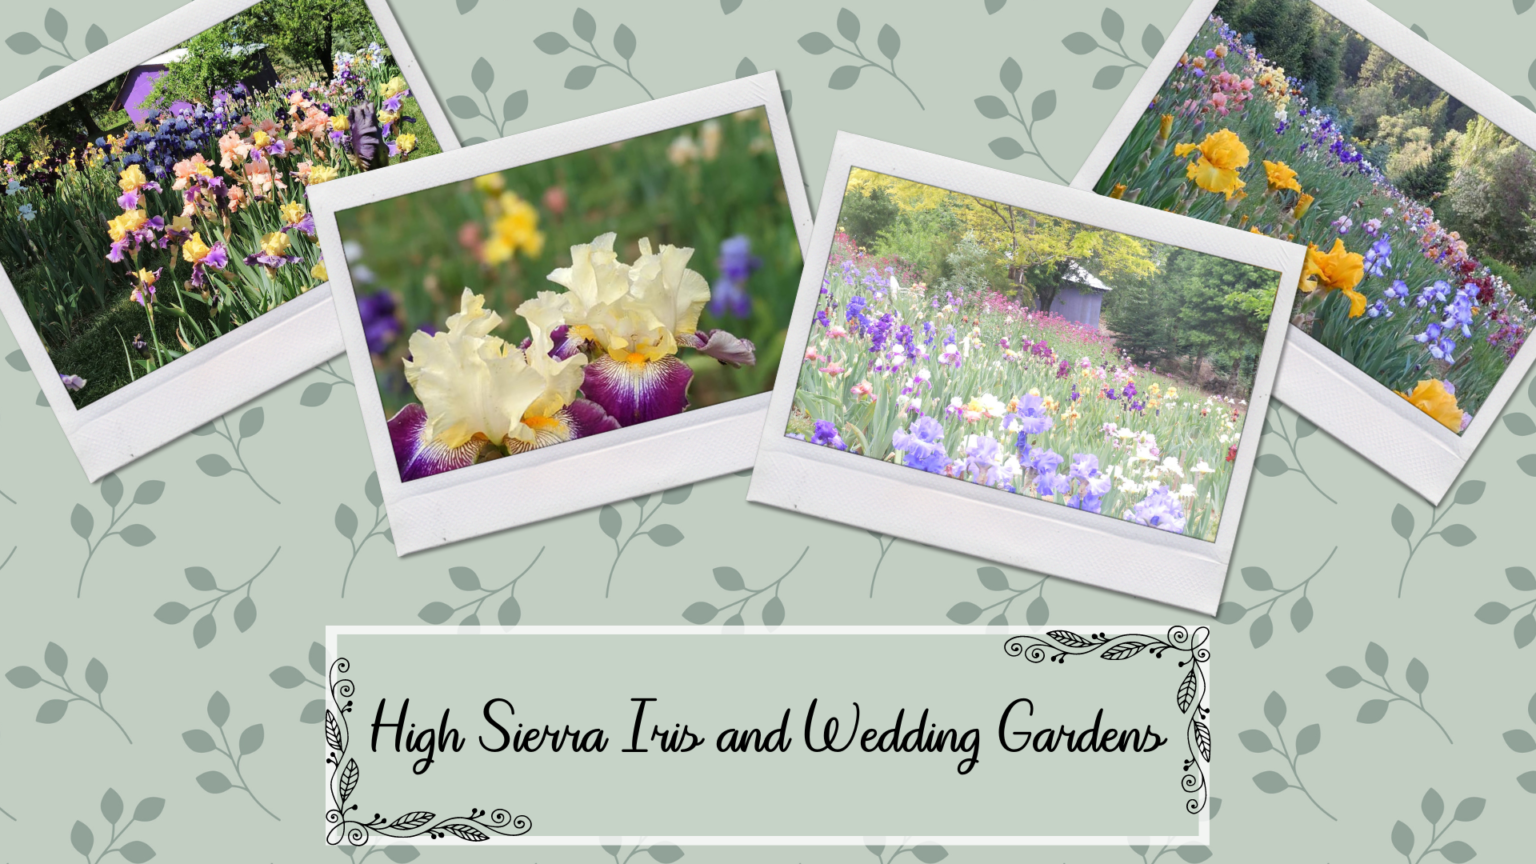 High Sierra Iris & Wedding Gardens | Farm Trails El Dorado County